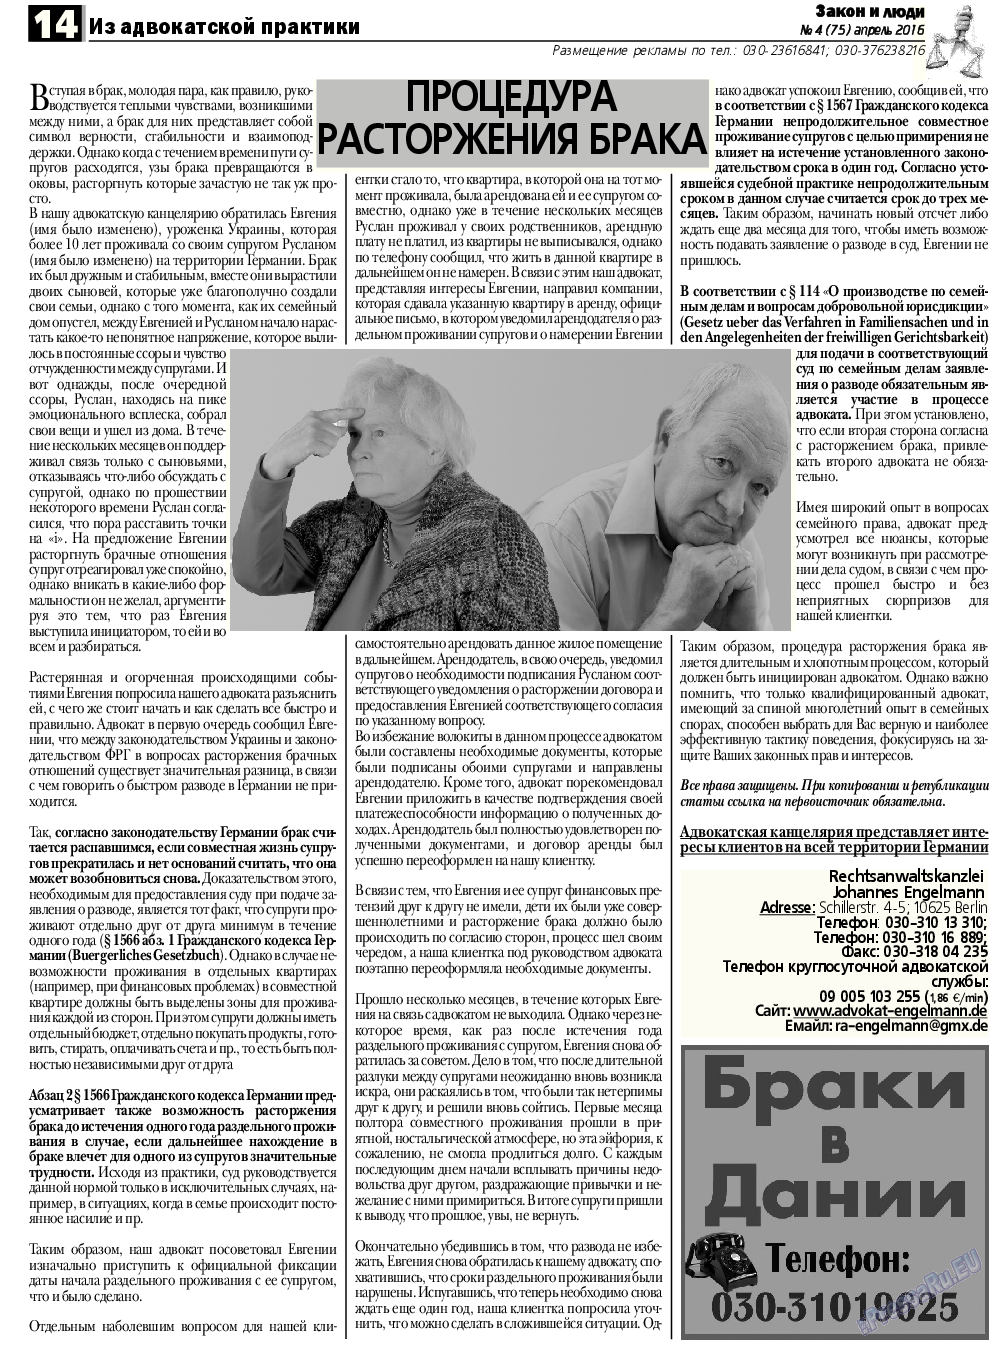 Закон и люди, газета. 2016 №4 стр.14